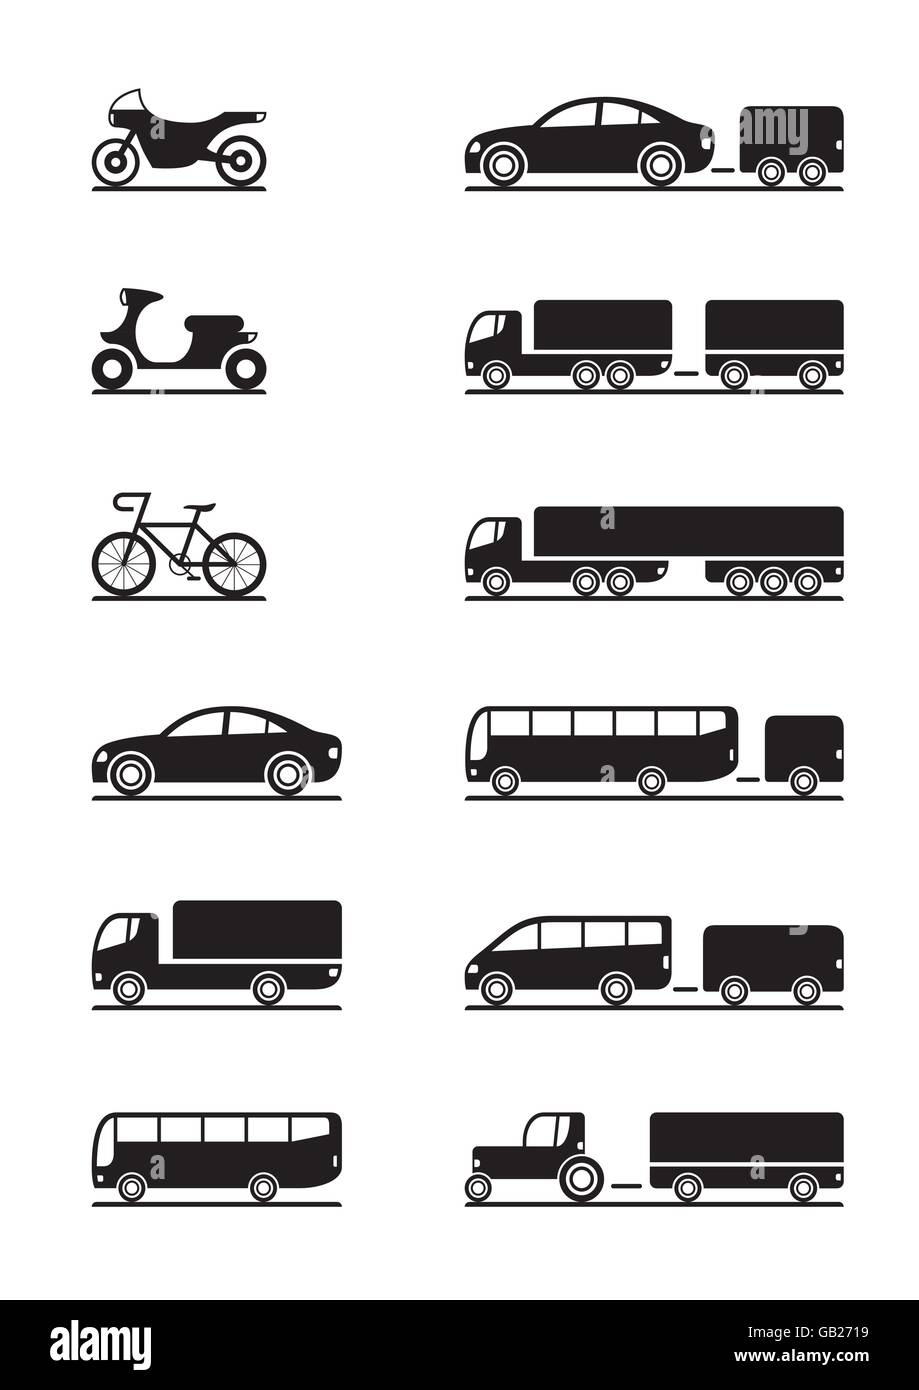 Les icônes de véhicules routiers - vector illustration Illustration de Vecteur